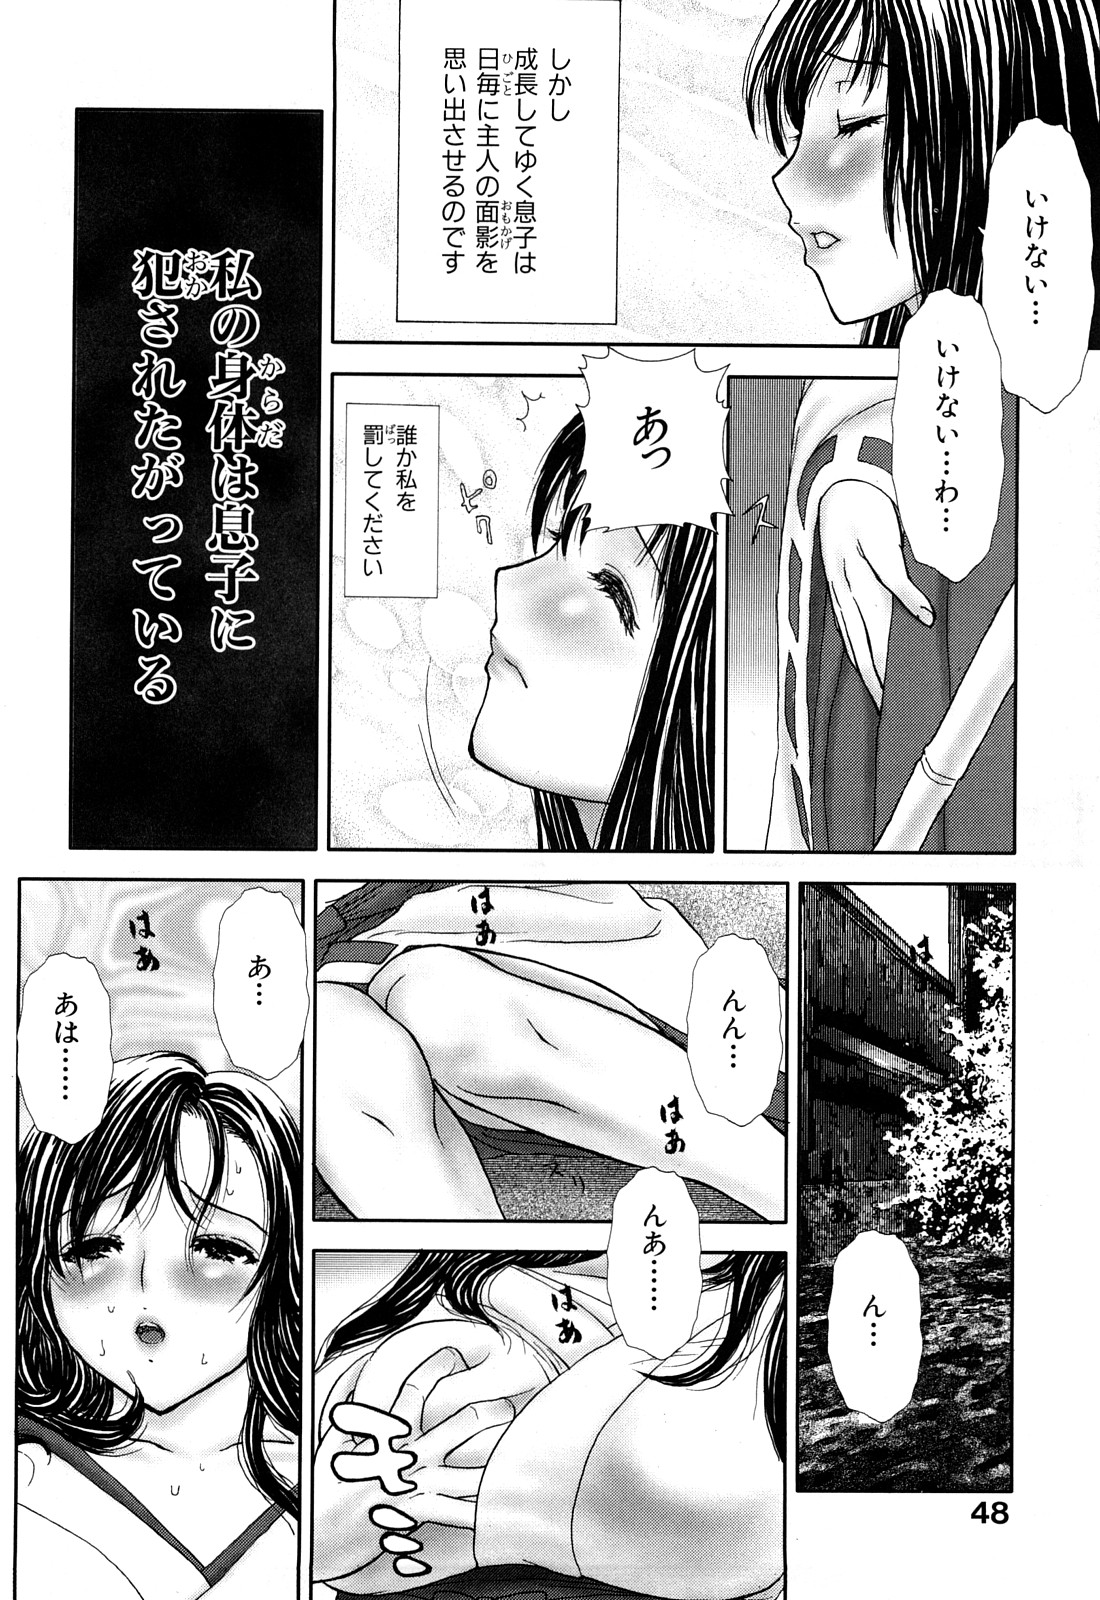 [EXTREME] Tsuma No Shizuku ~Nikuyome Miyuki 29 sai~ page 50 full